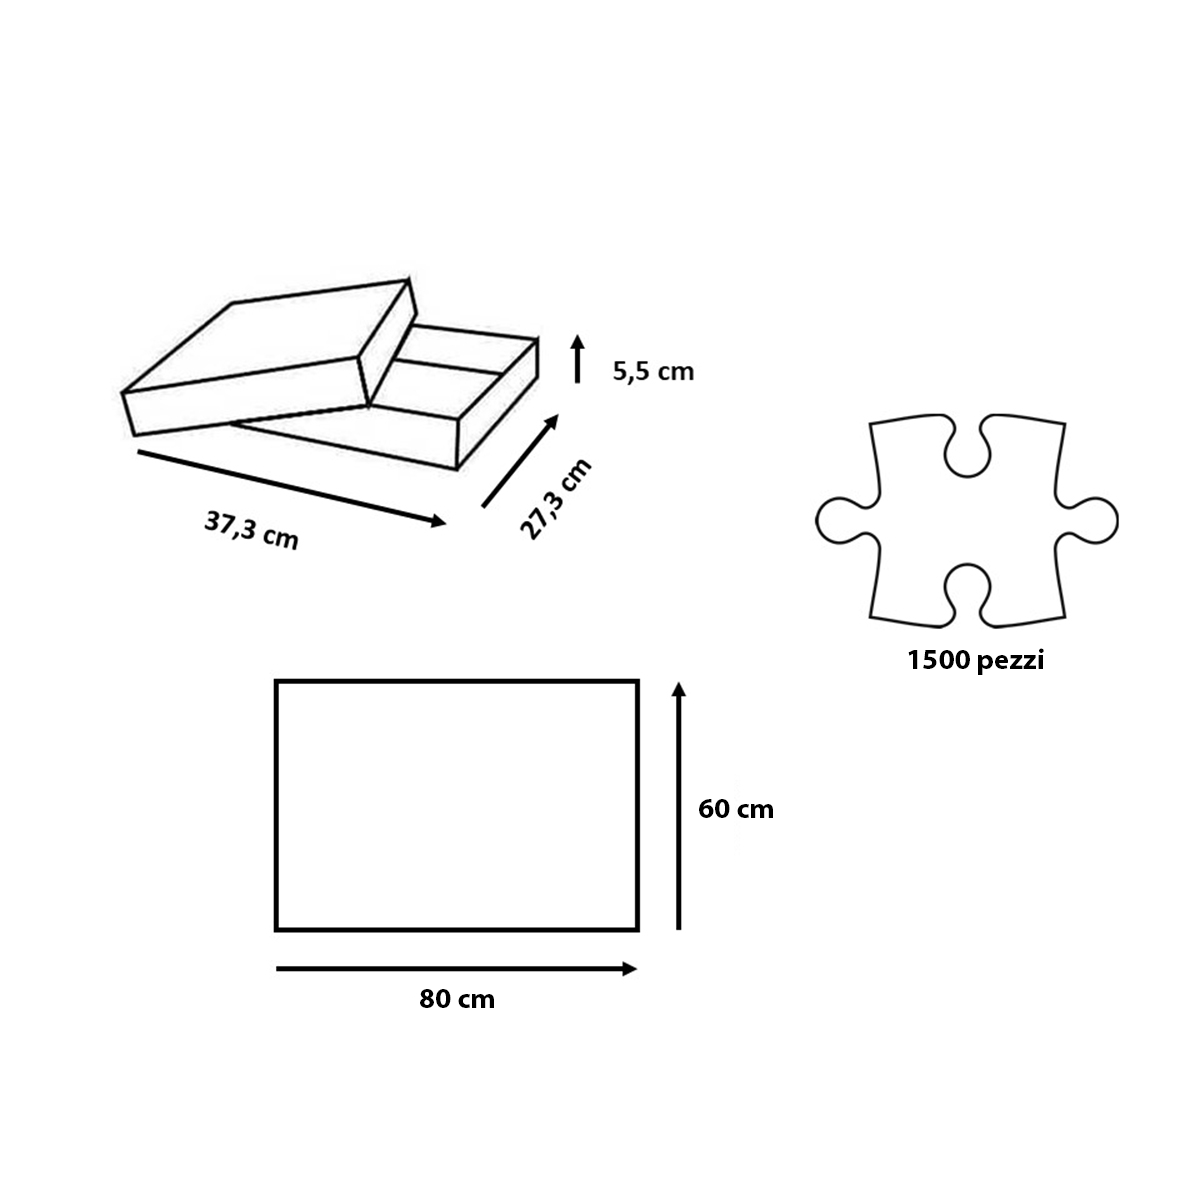 Ravensburger puzzle per adulti - 1500 pezzi - pokemon - dimensione puzzle: 80x60 cm. - POKEMON, RAVENSBURGER